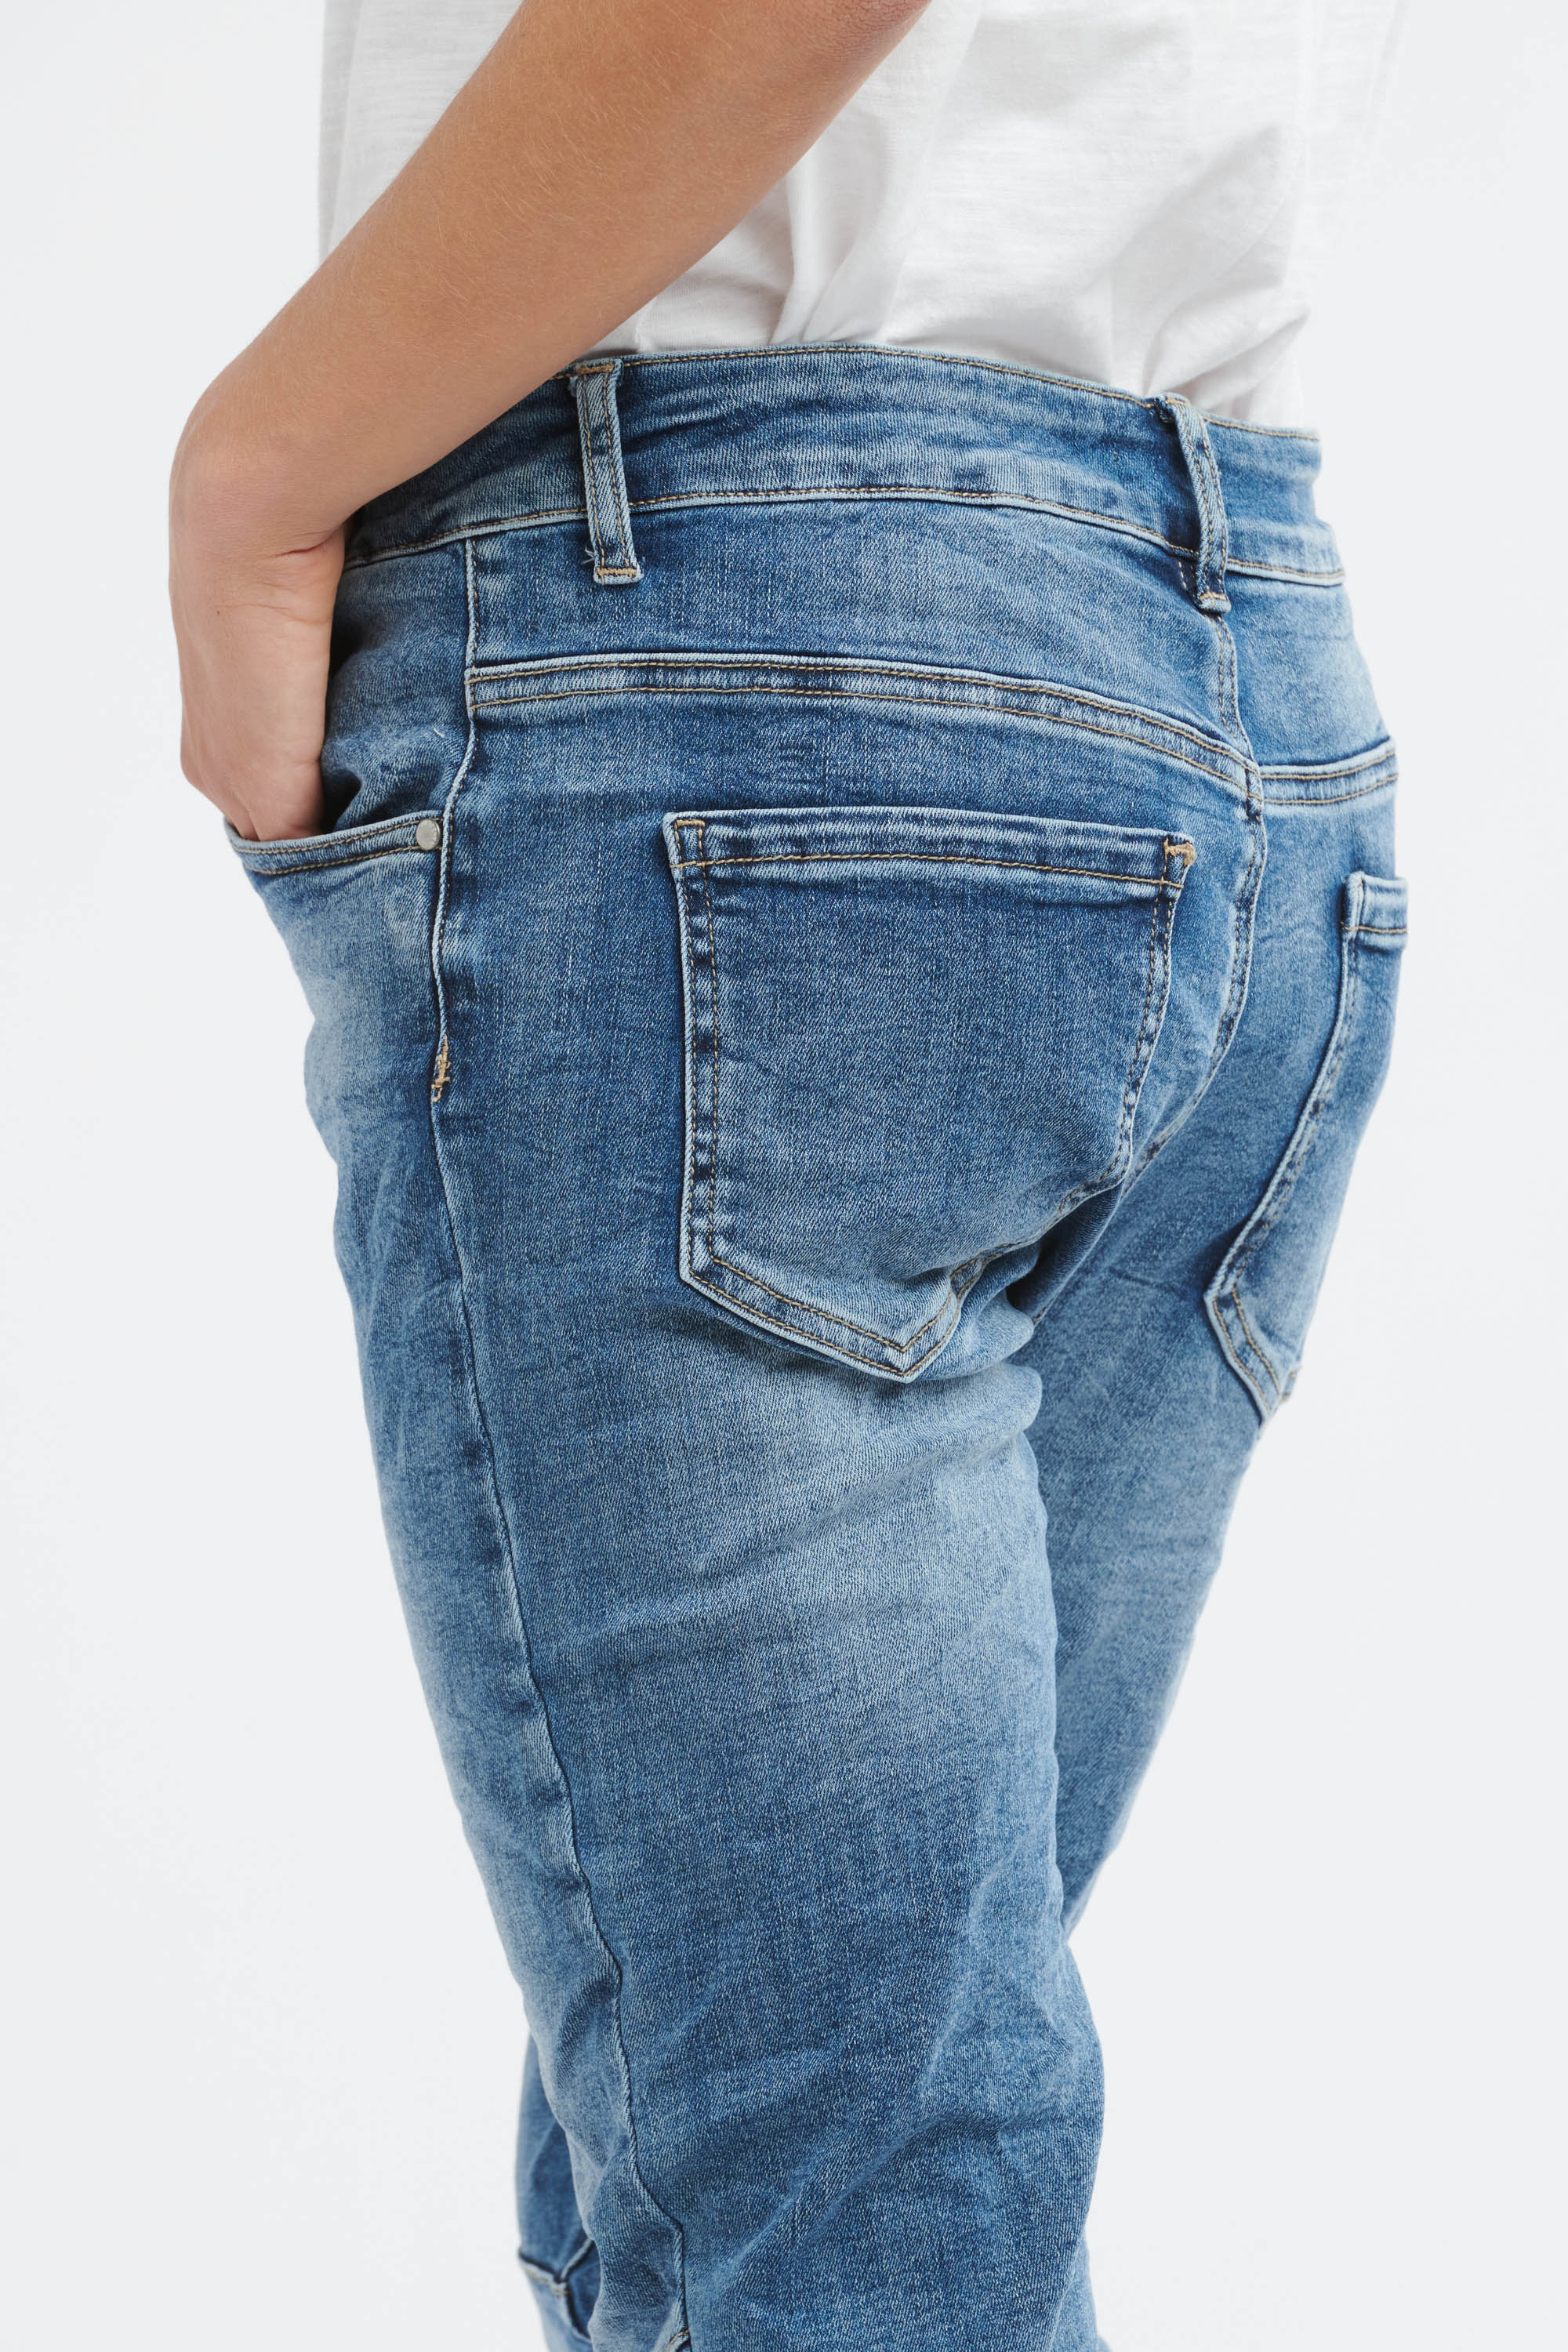 New Italian Star Jean - Light Wash No Zip Pockets-Jeans-Italian Star-The Bay Room